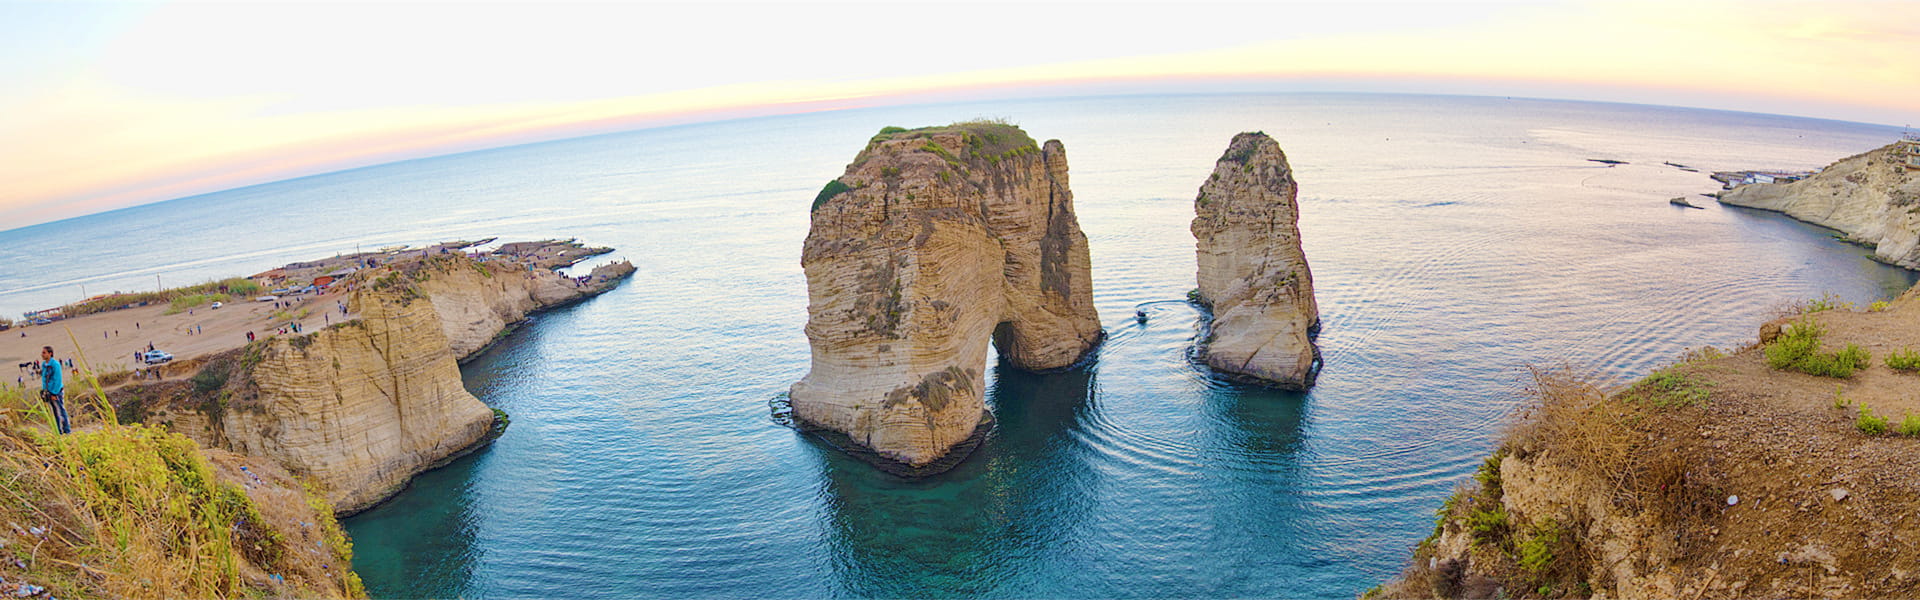 Raouche Rocks, Beirut